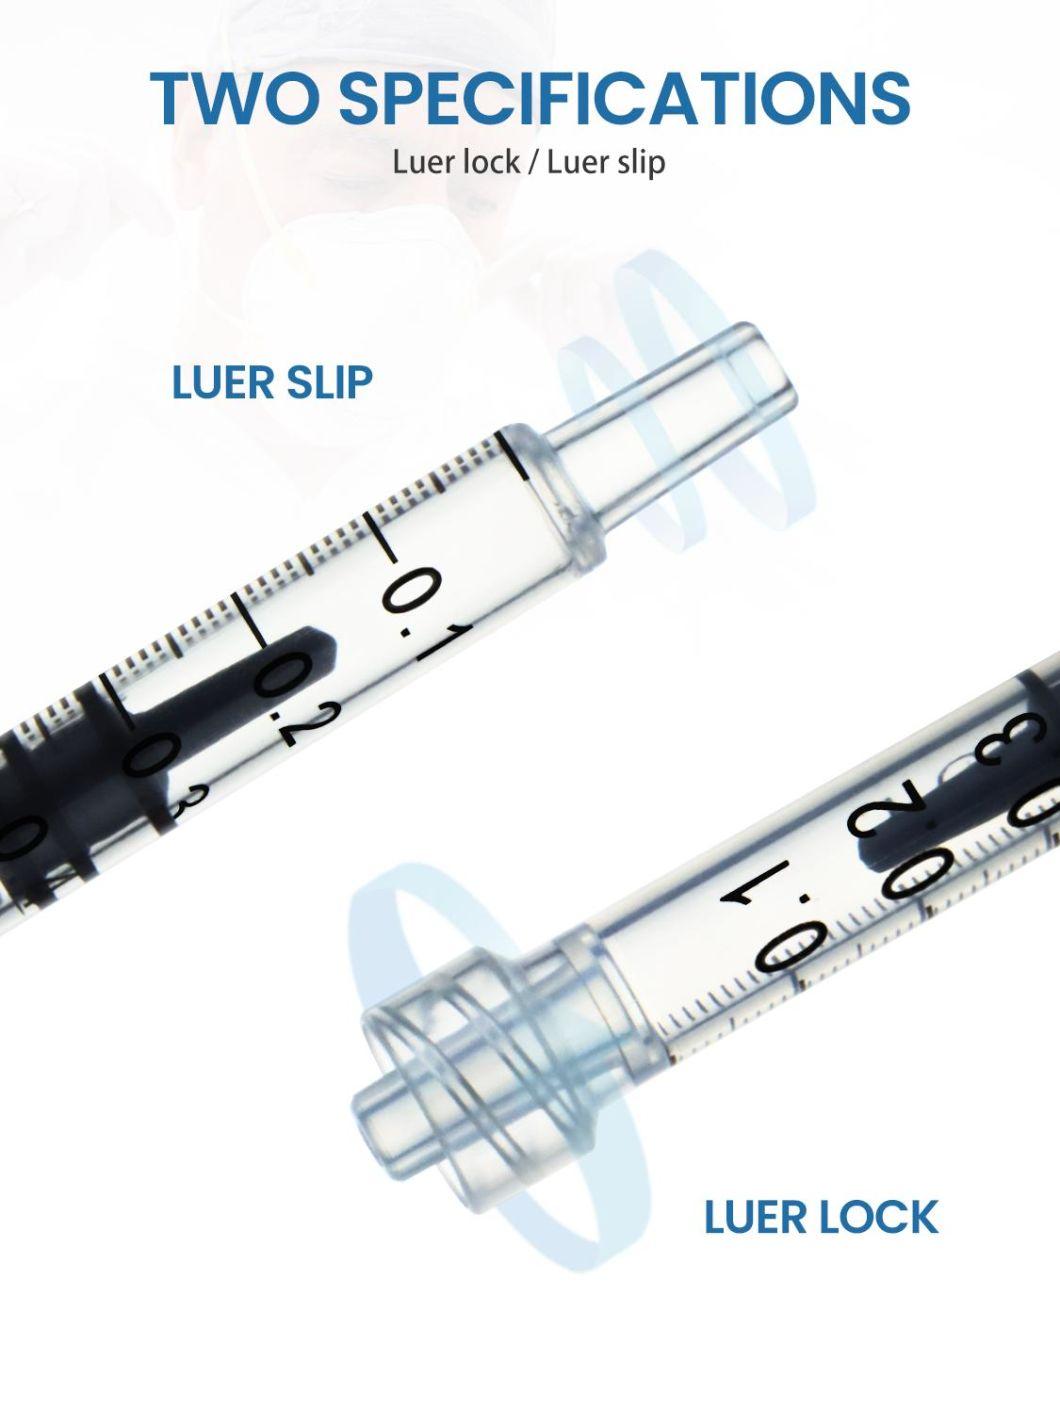 Wego Plastic Syringes Price Injection Disposable Syringe with Needle Manufacturer